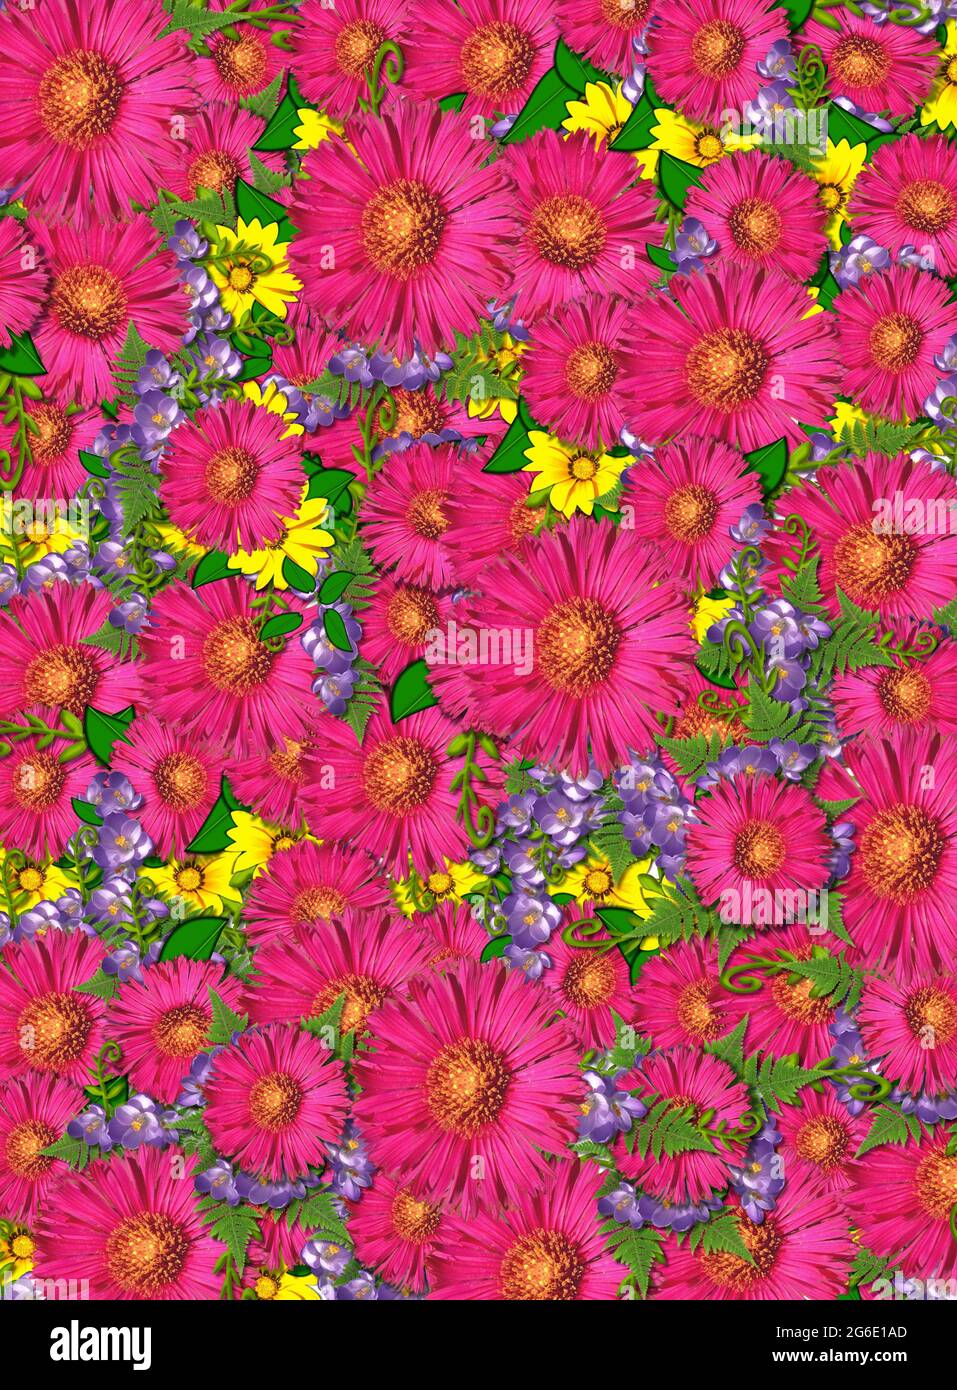 Immagine di copertina di un tappeto di fiori. Le margherite rosa shasta e i  fiori gialli e viola formano il tappeto di fiori Foto stock - Alamy